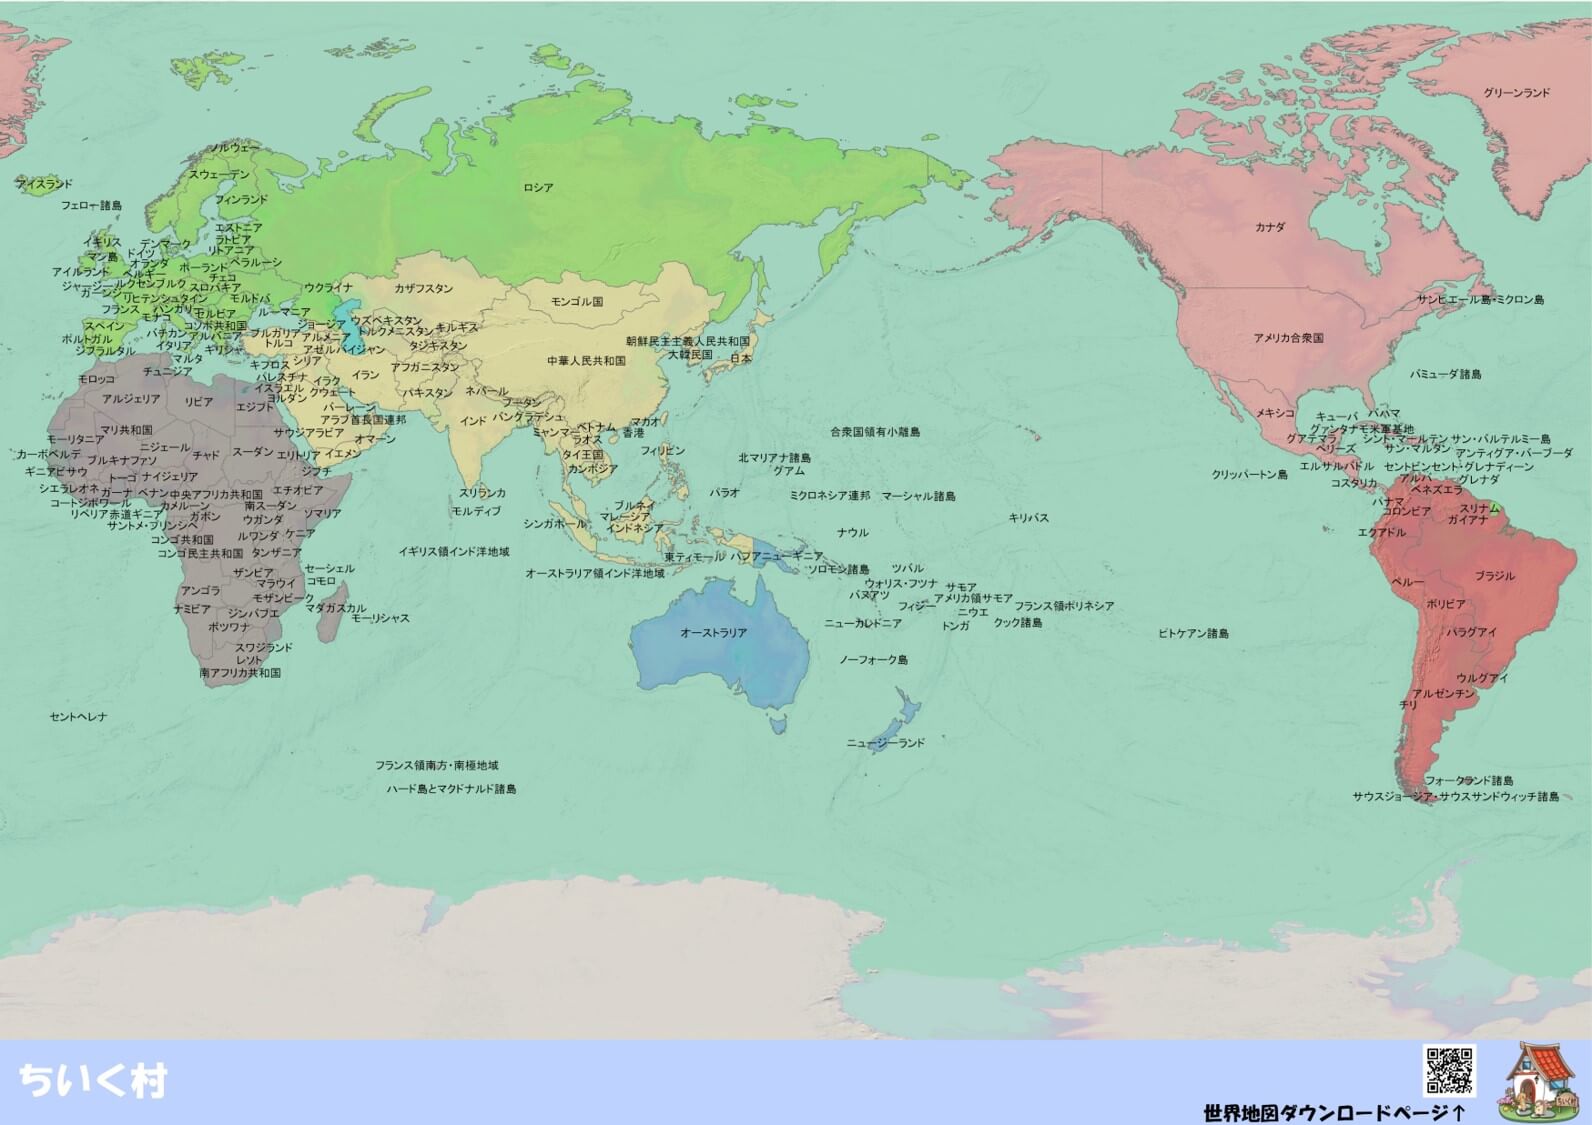 わかりやすい世界地図